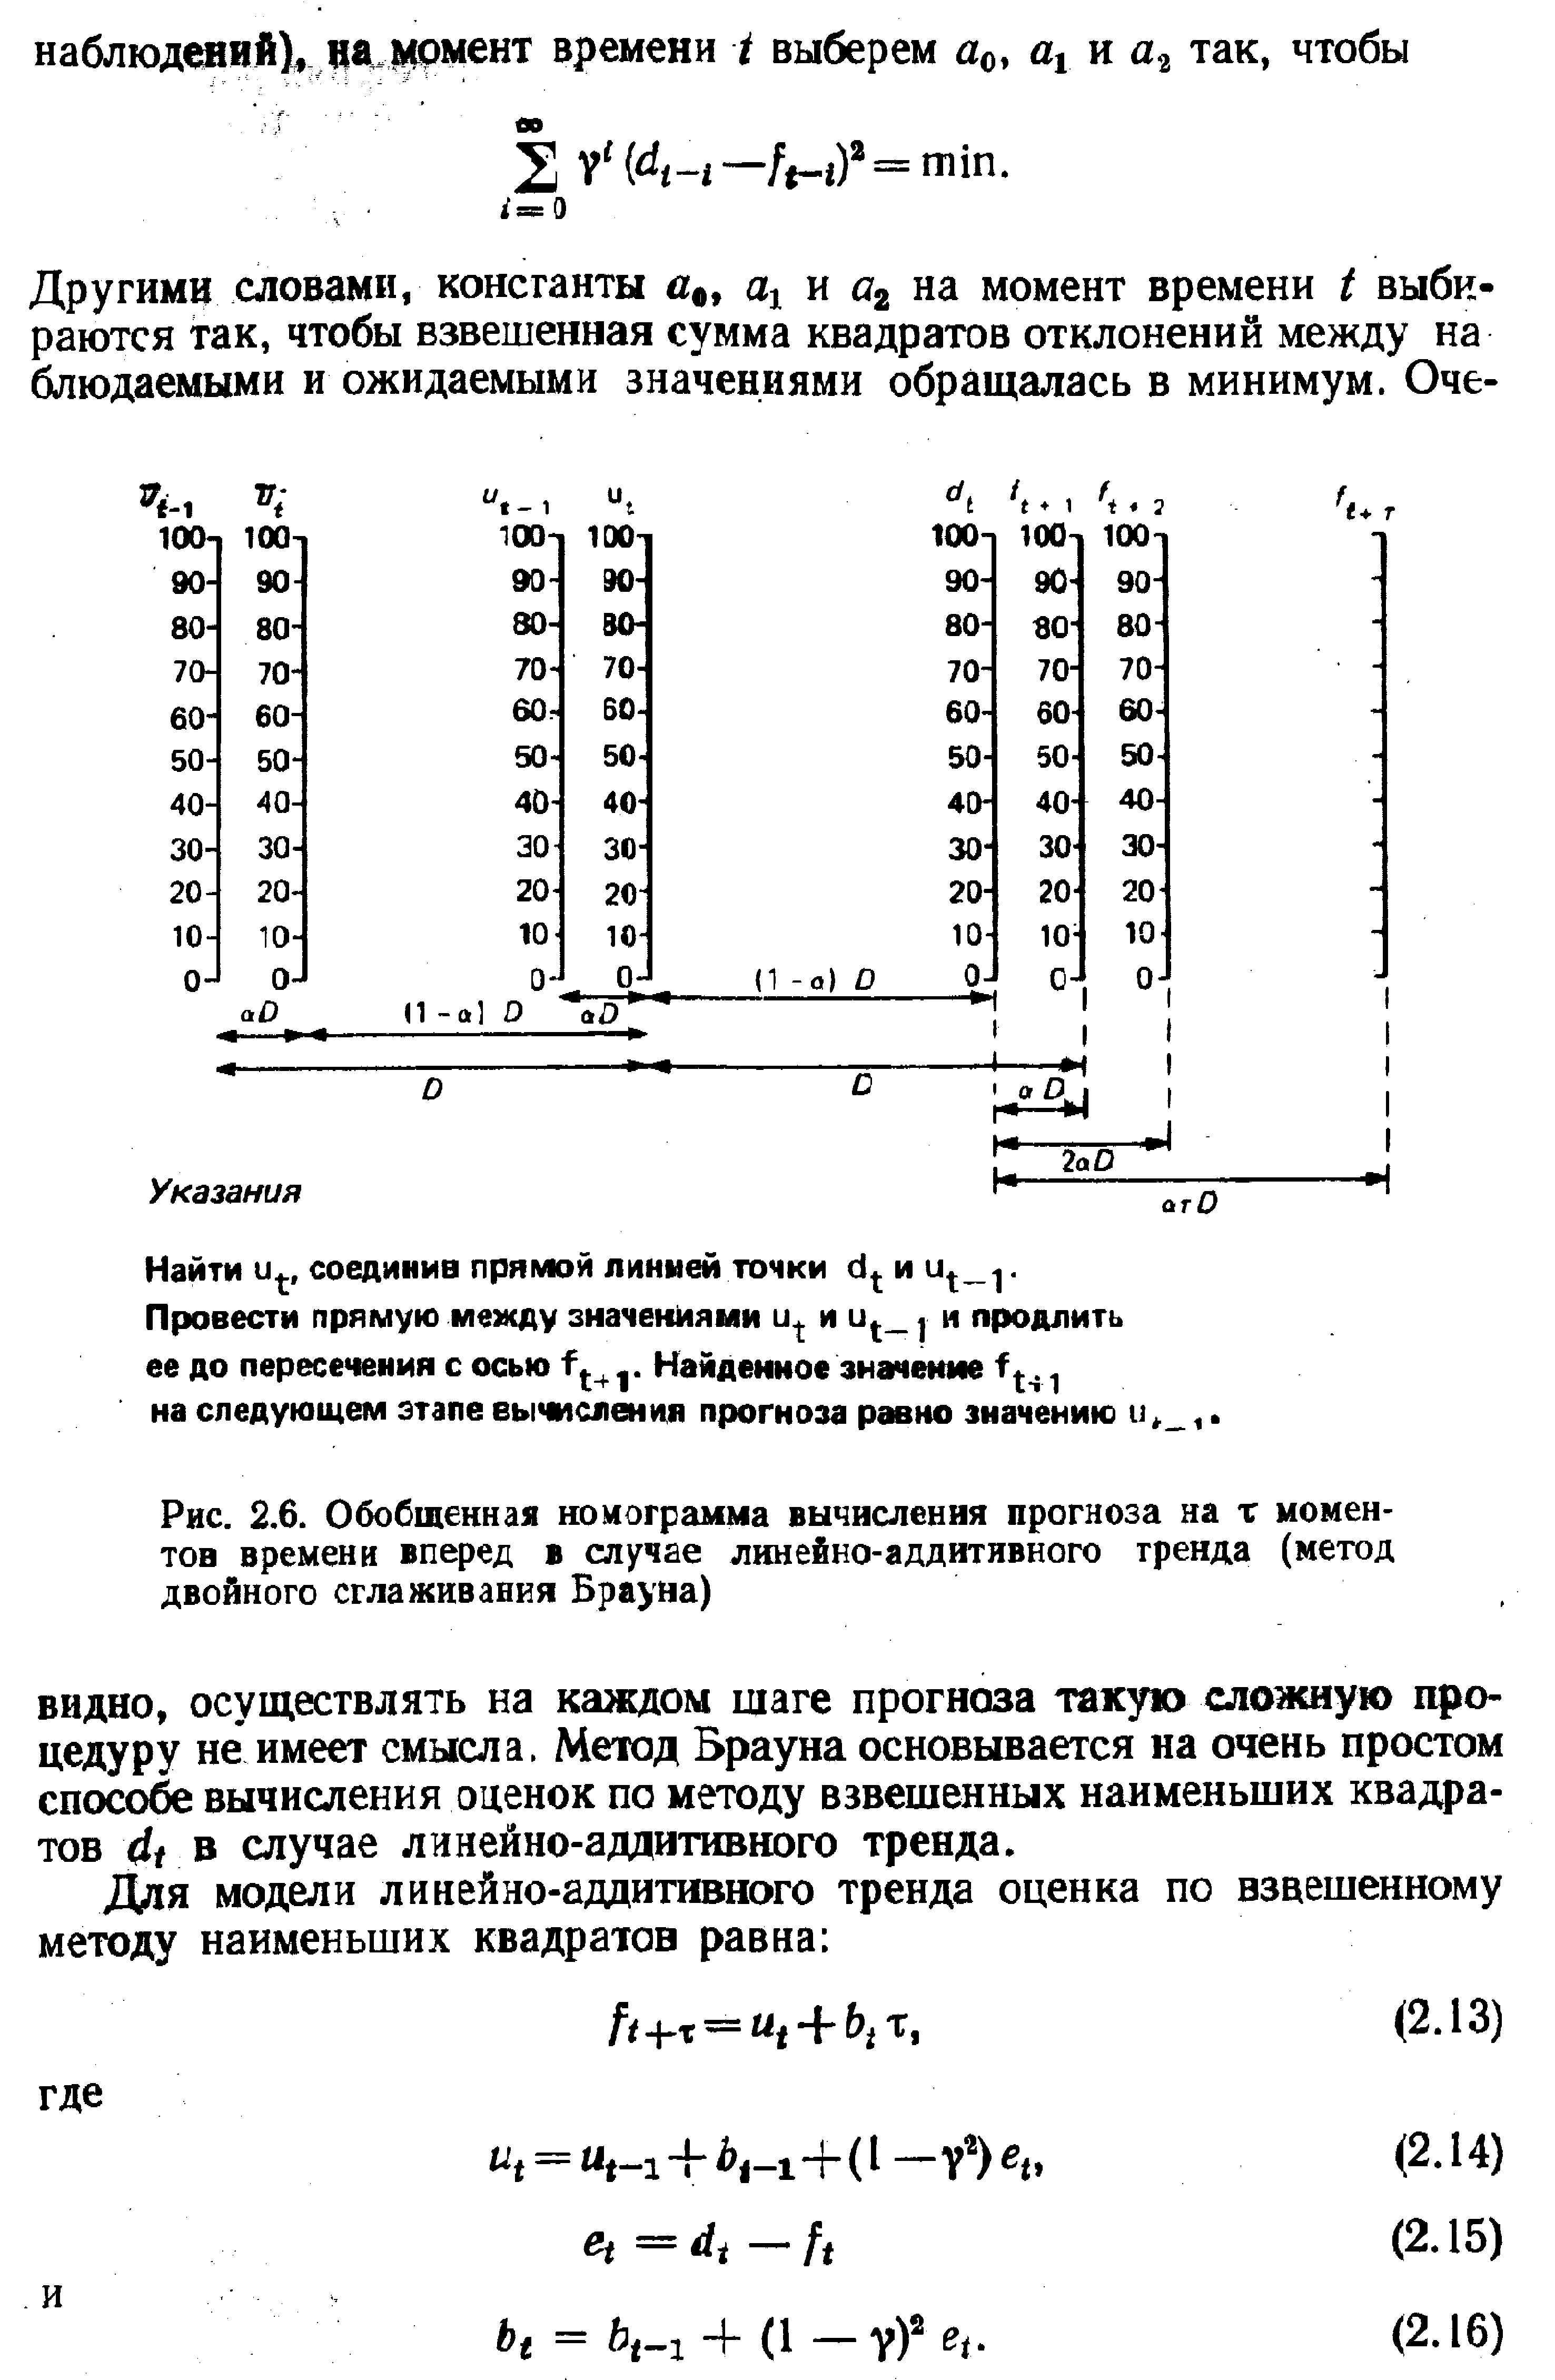 Рис. 2.6. Обобщенная номограмма вычисления прогноза на т моментов времени вперед в случае линейно-аддитивного тренда (метод двойного сглаживания Брауна) 